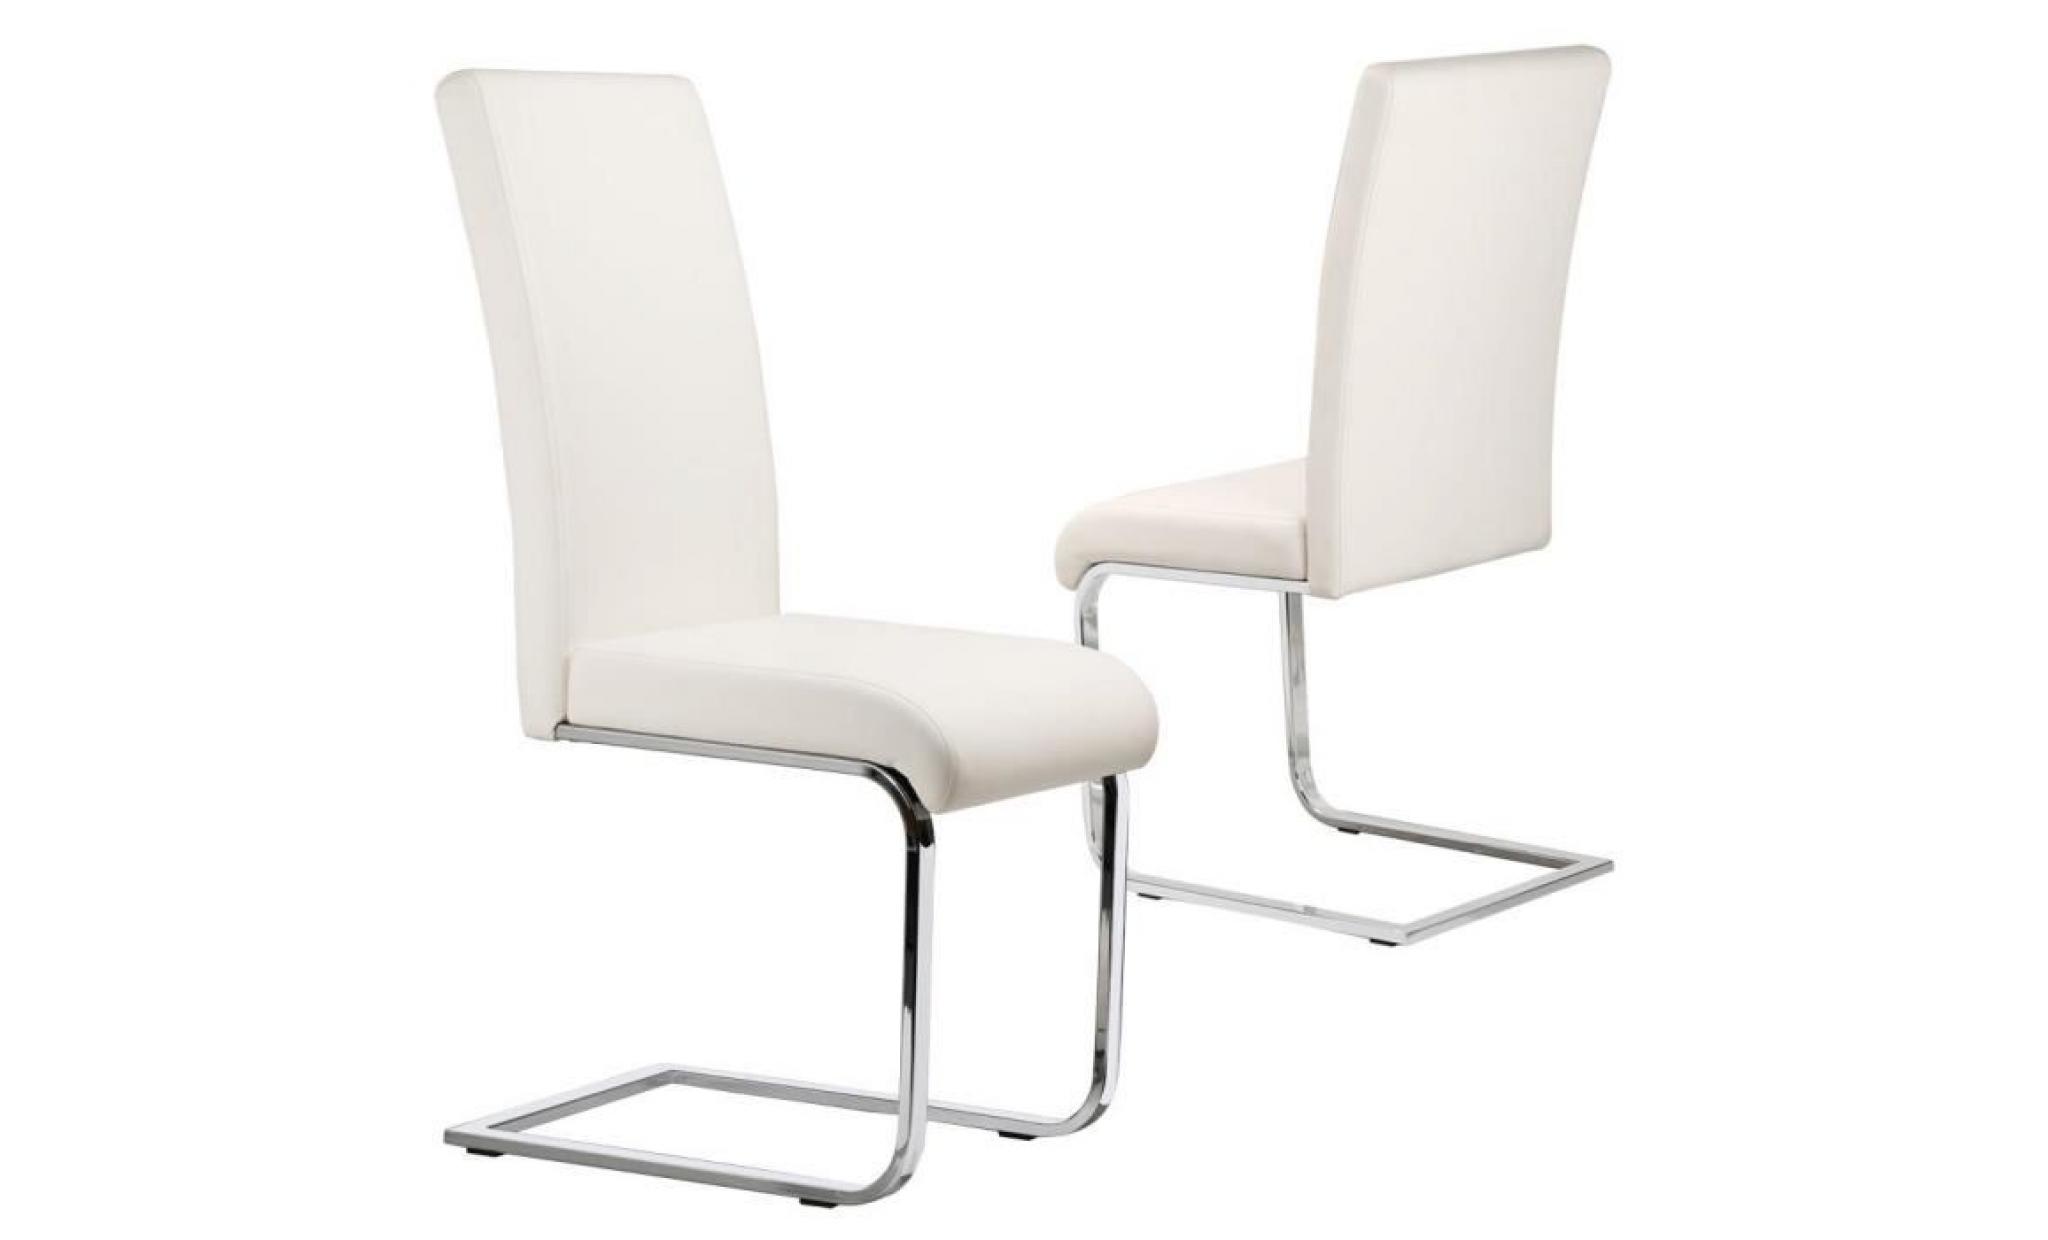 lot de 2 chaises pour salle à manger en similicuir blanc, capacité: 120kg, hauteur de siège rembourré: 47cm   yaheetech